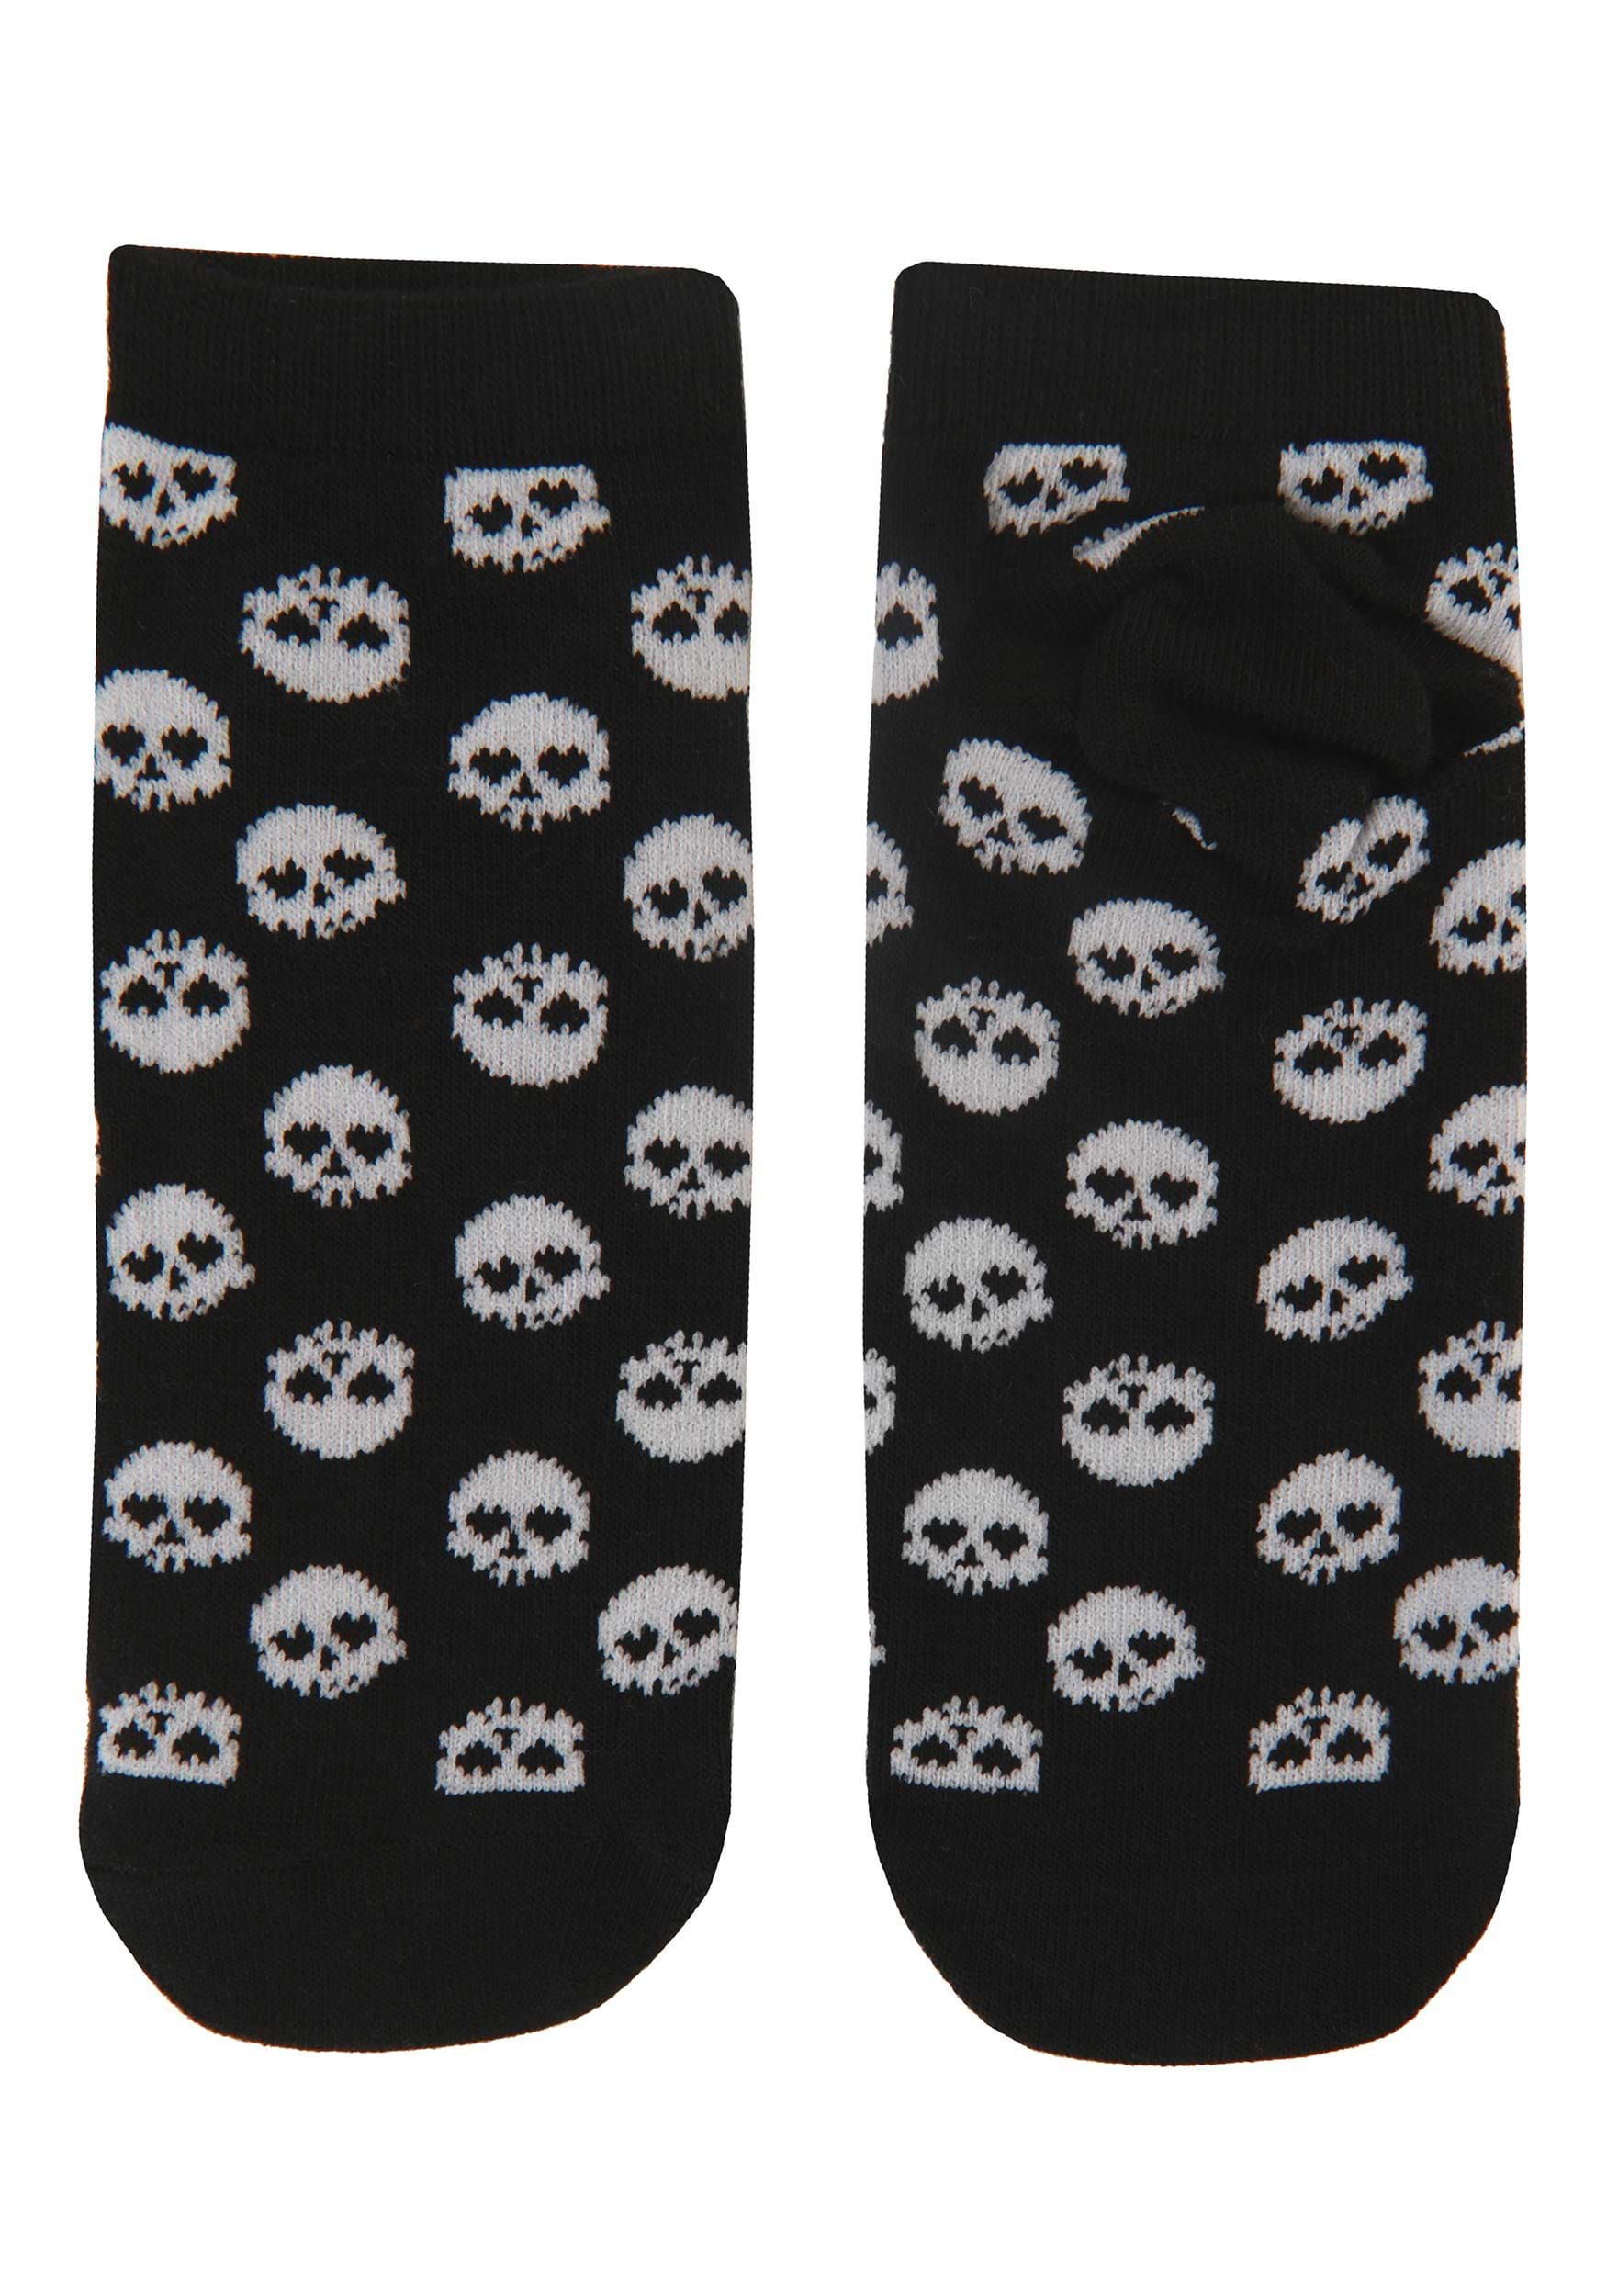 Goth Pack Of 5 Valentine's Day Socks , Holiday Socks